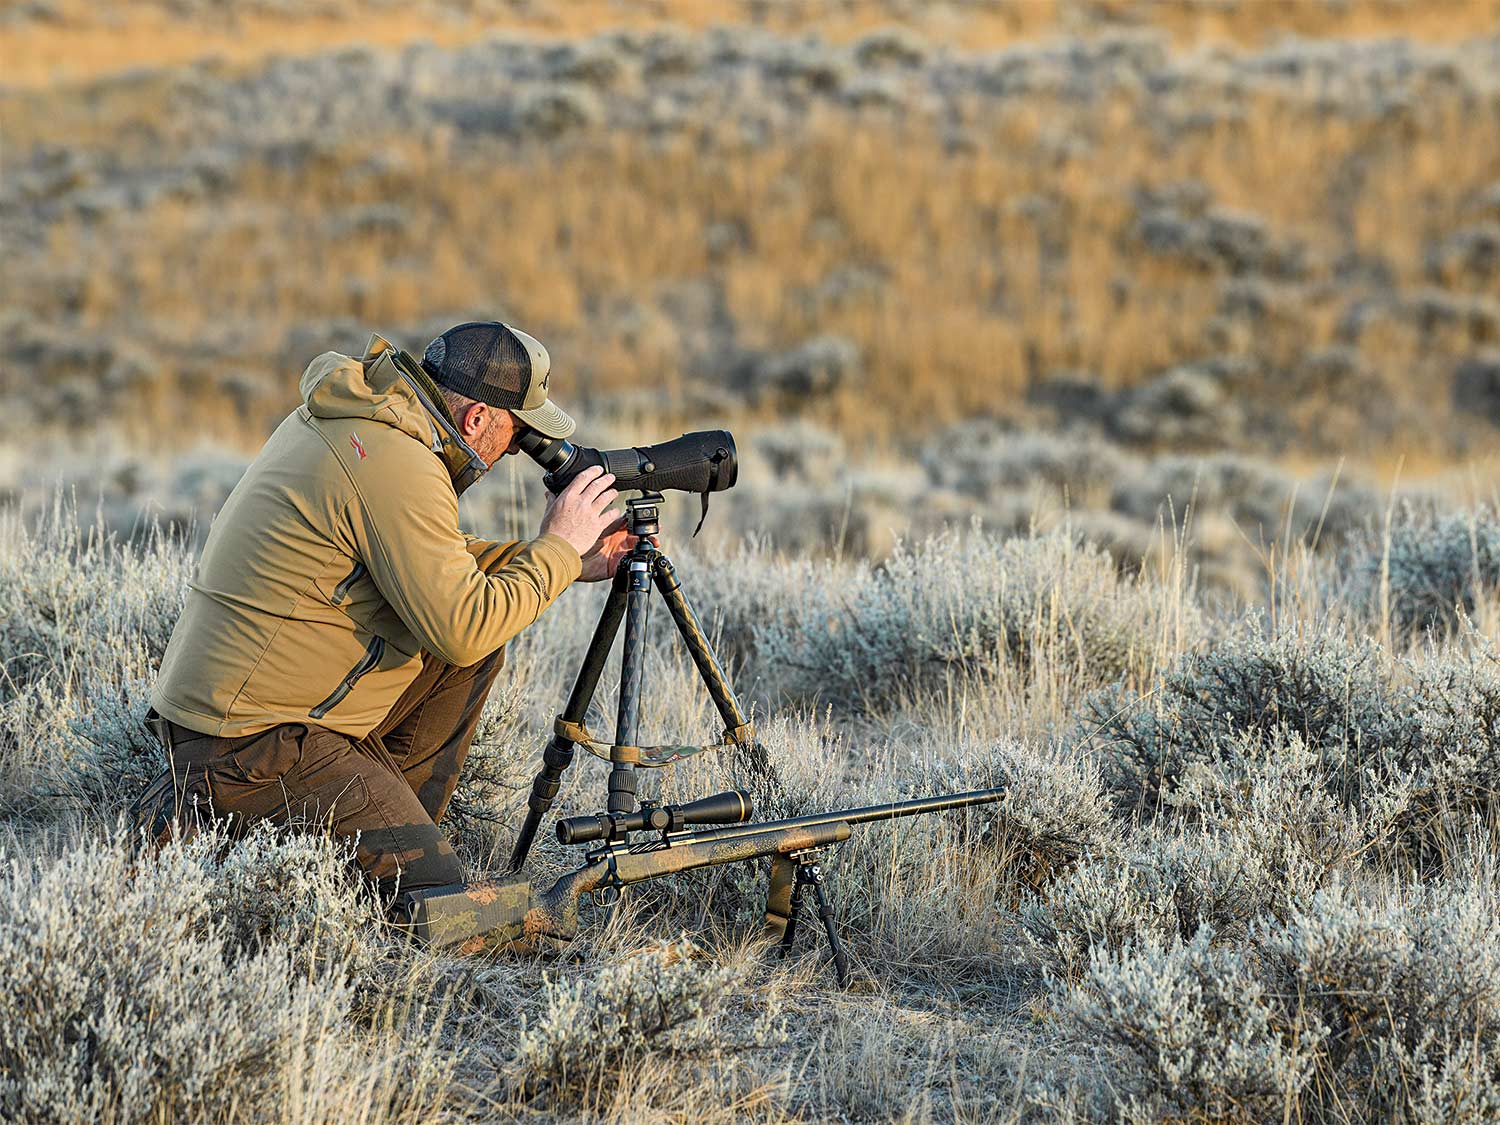 Hunter using a spotting scope in an open field.